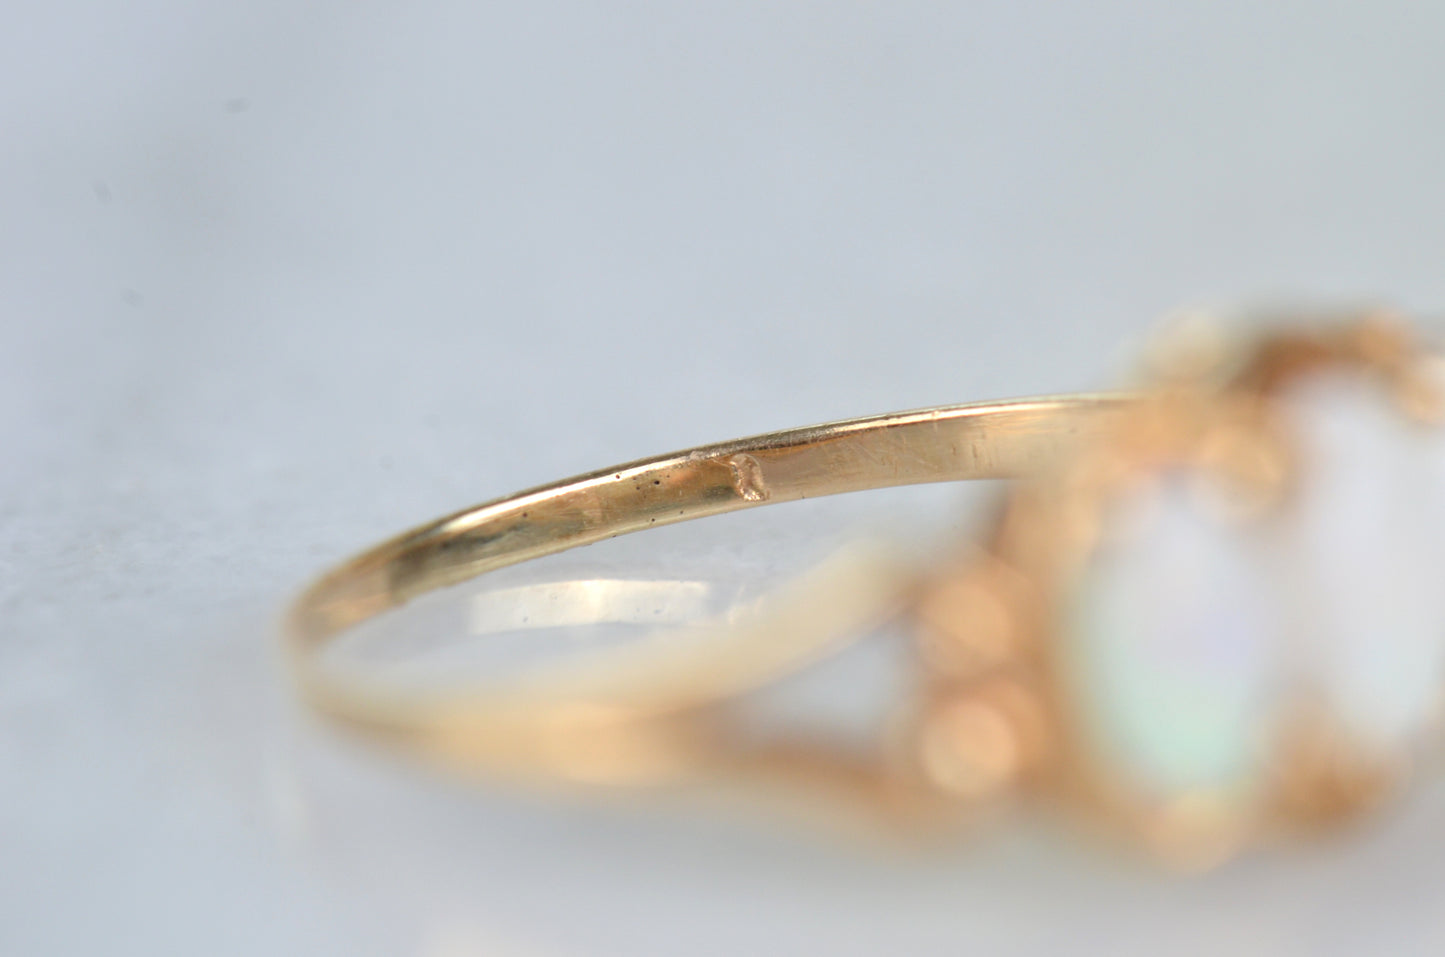 Detailed Vintage Opal Trilogy Ring